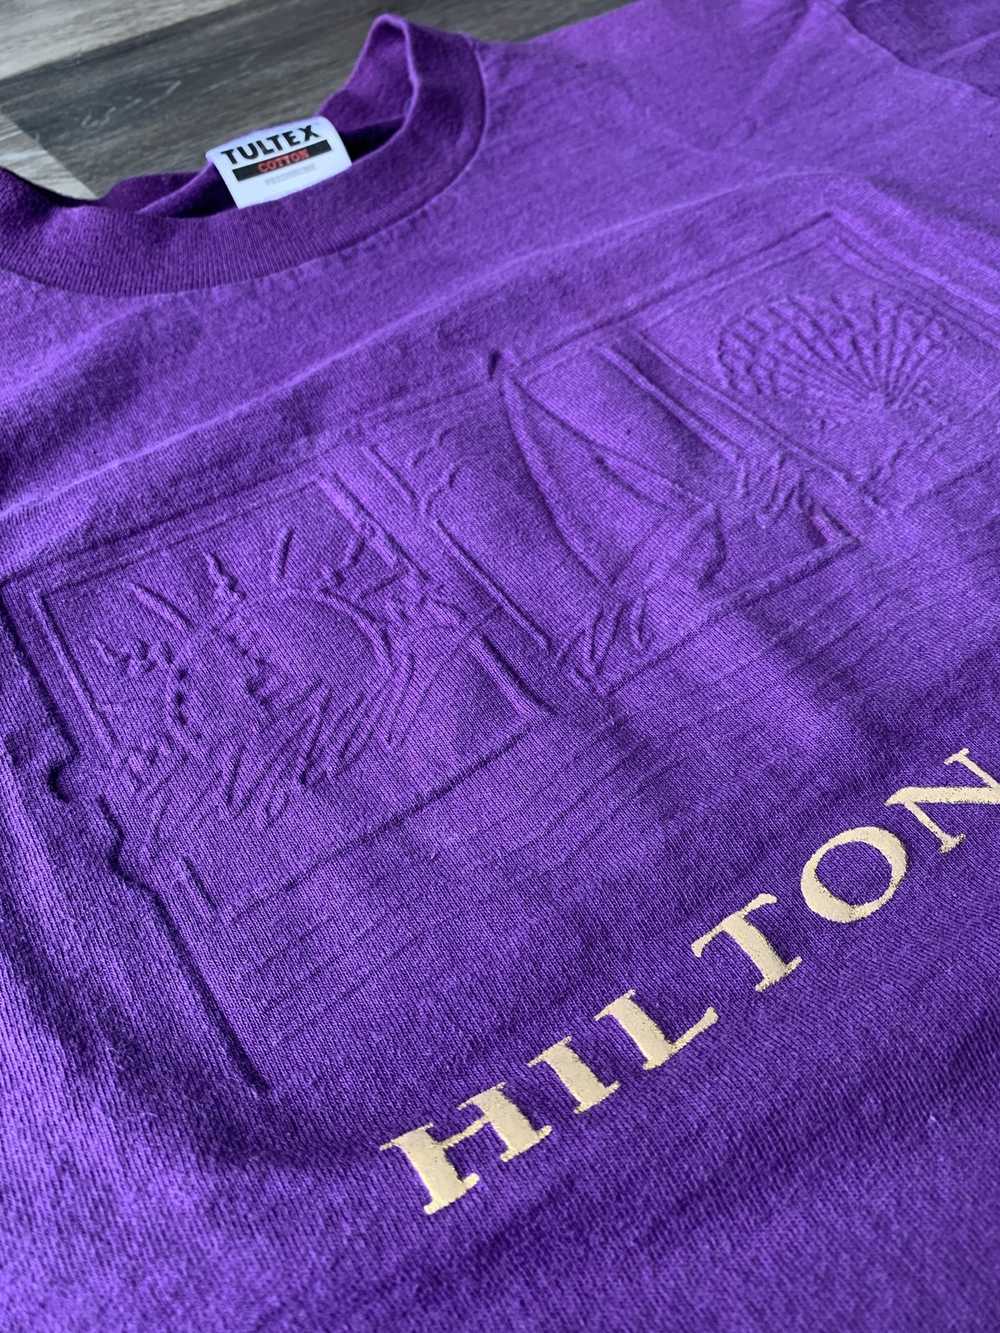 Tultex Tultex Hilton Head Vintage Shirt - image 2